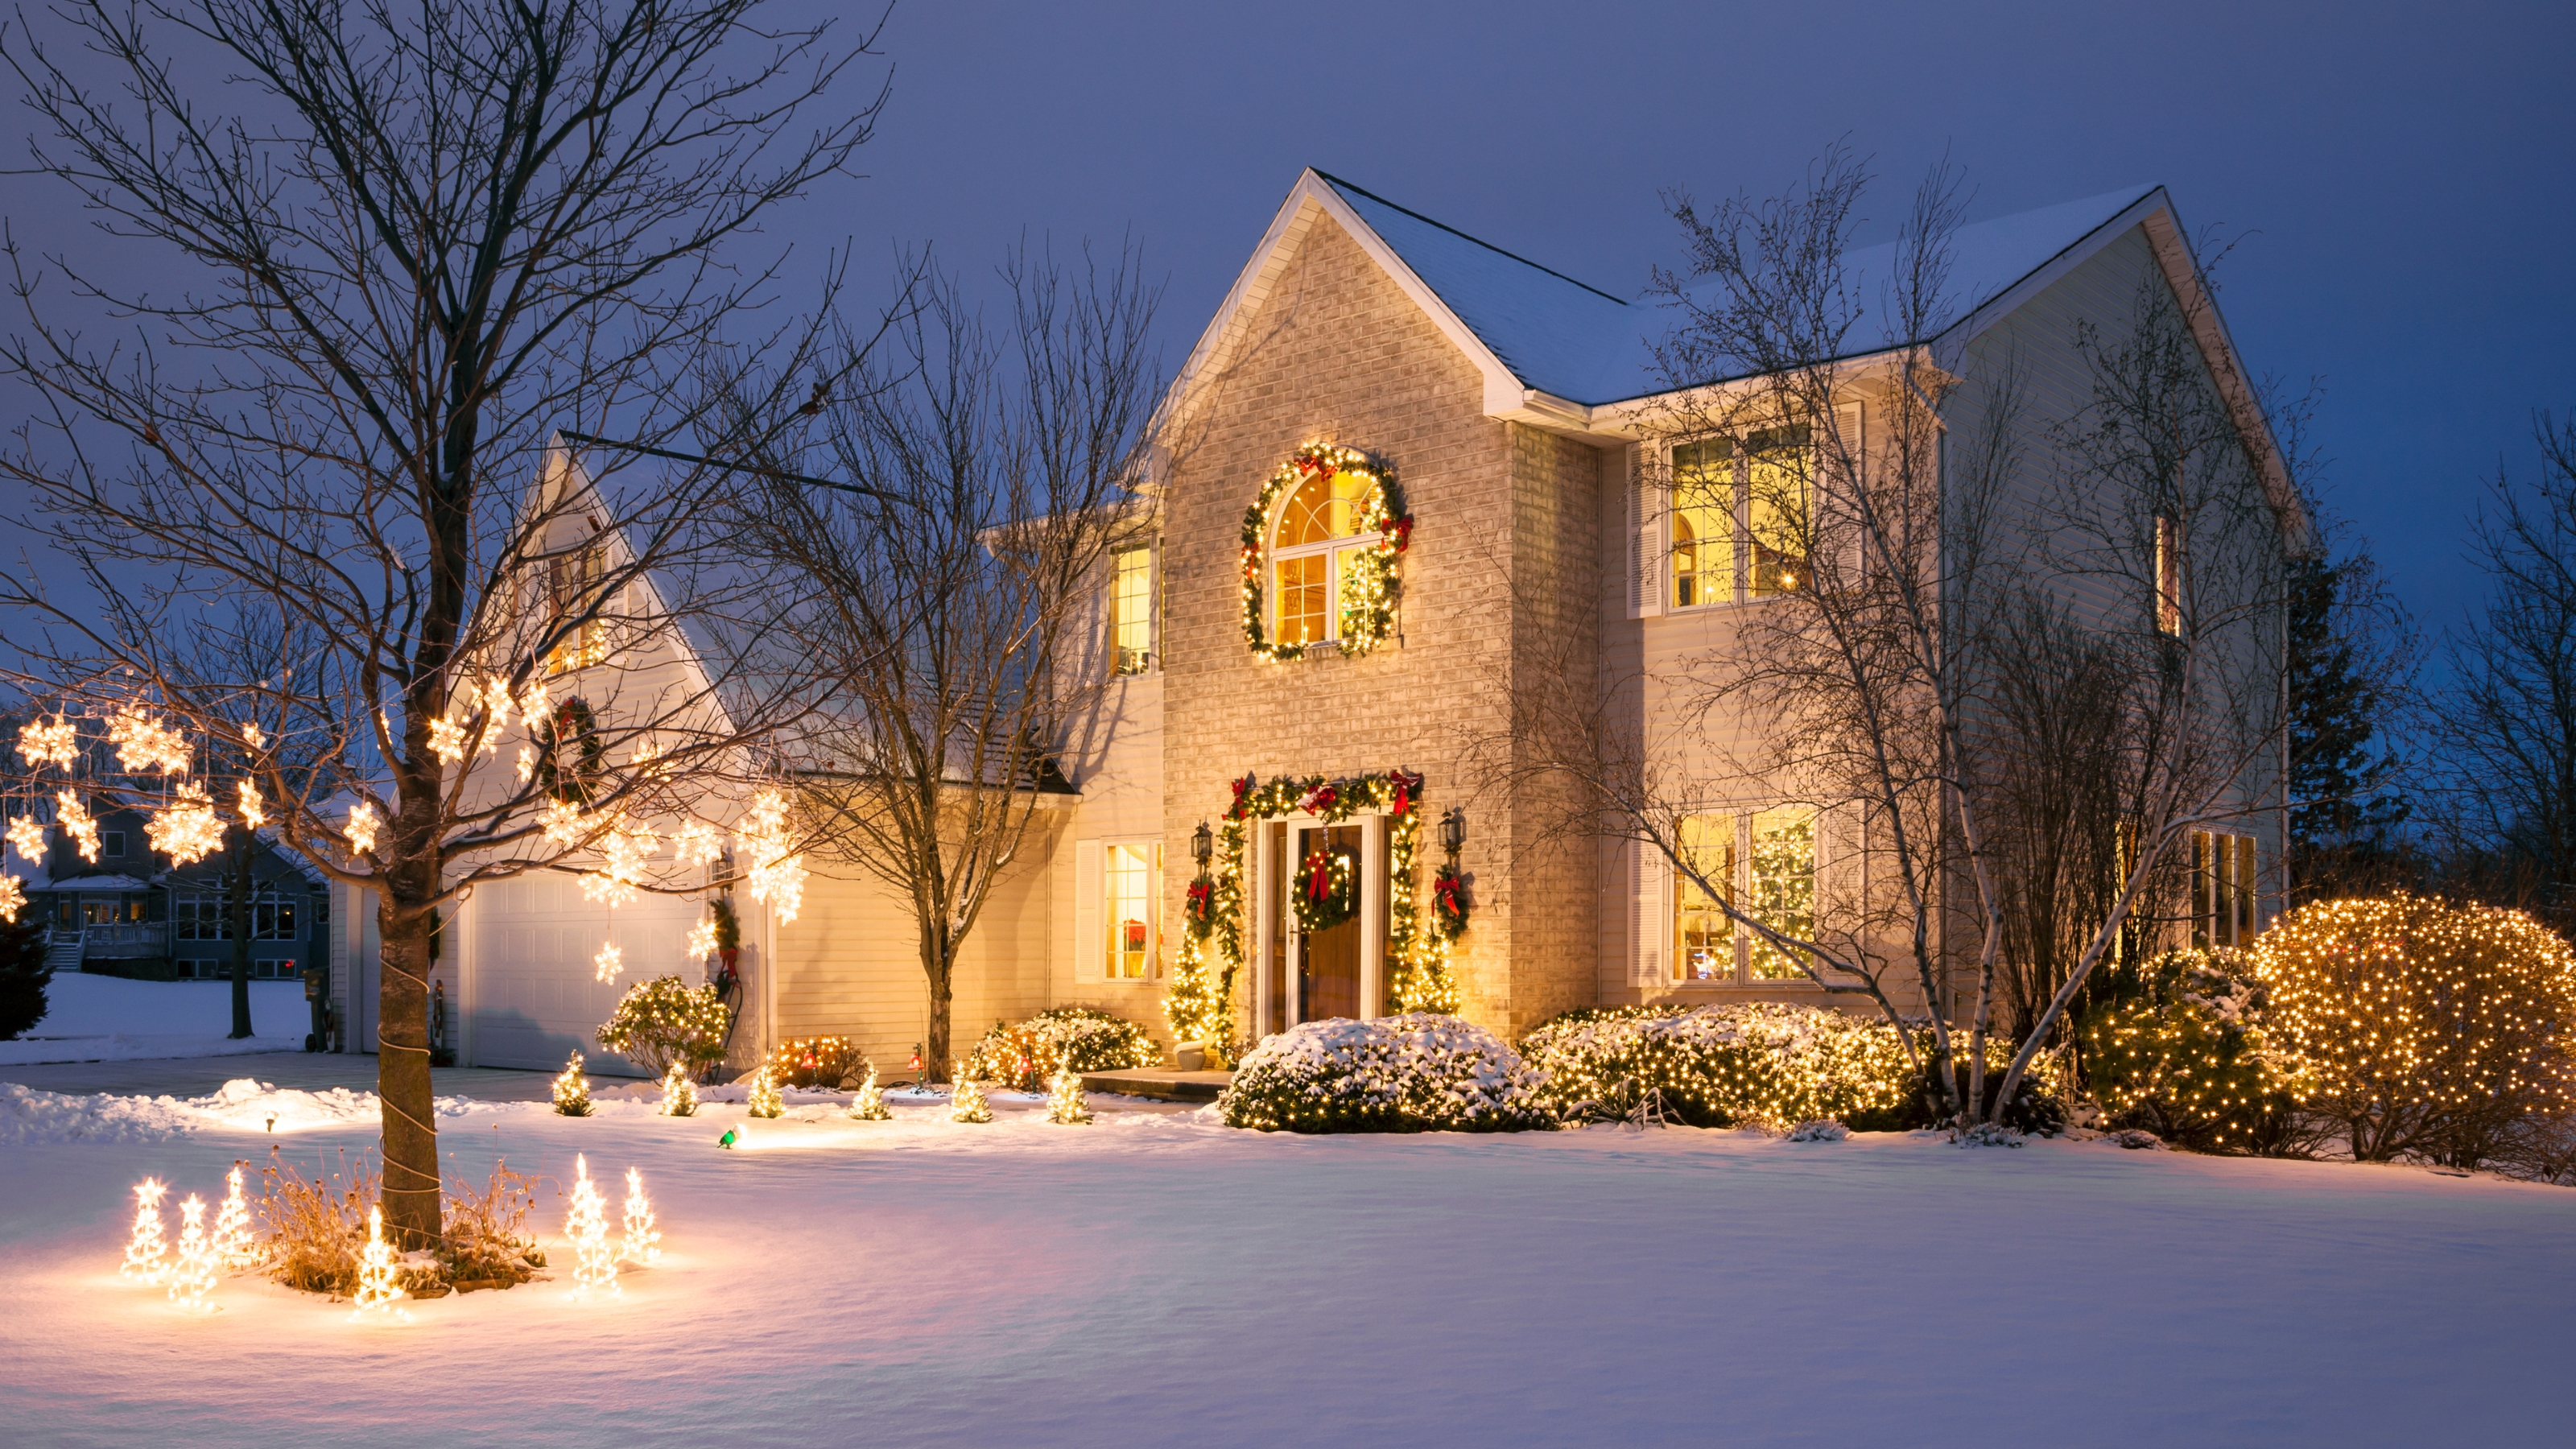 10 outdoor Christmas lighting ideas